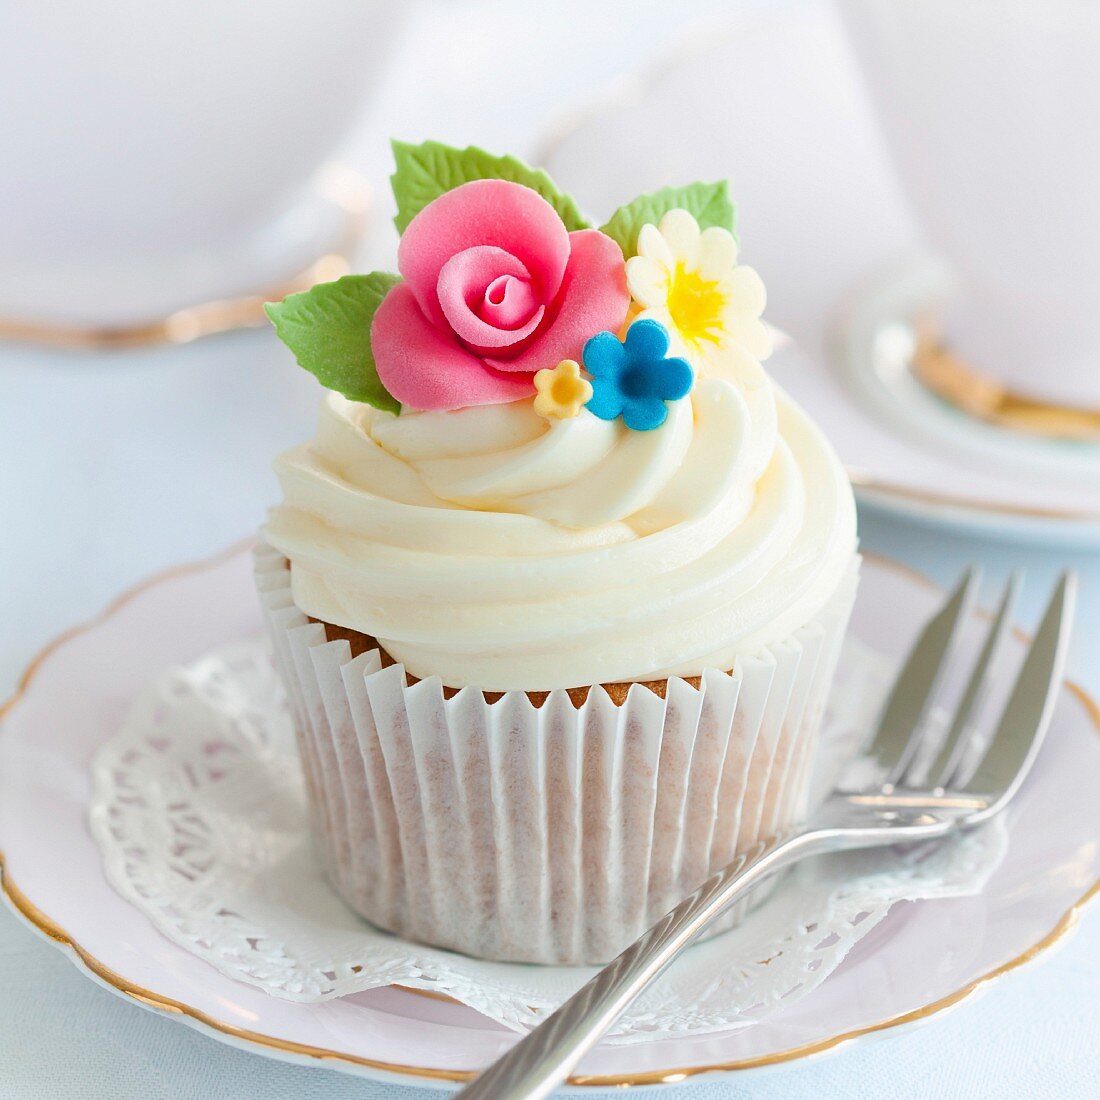 Cupcake, verziert mit Zuckerblüten (Close Up)